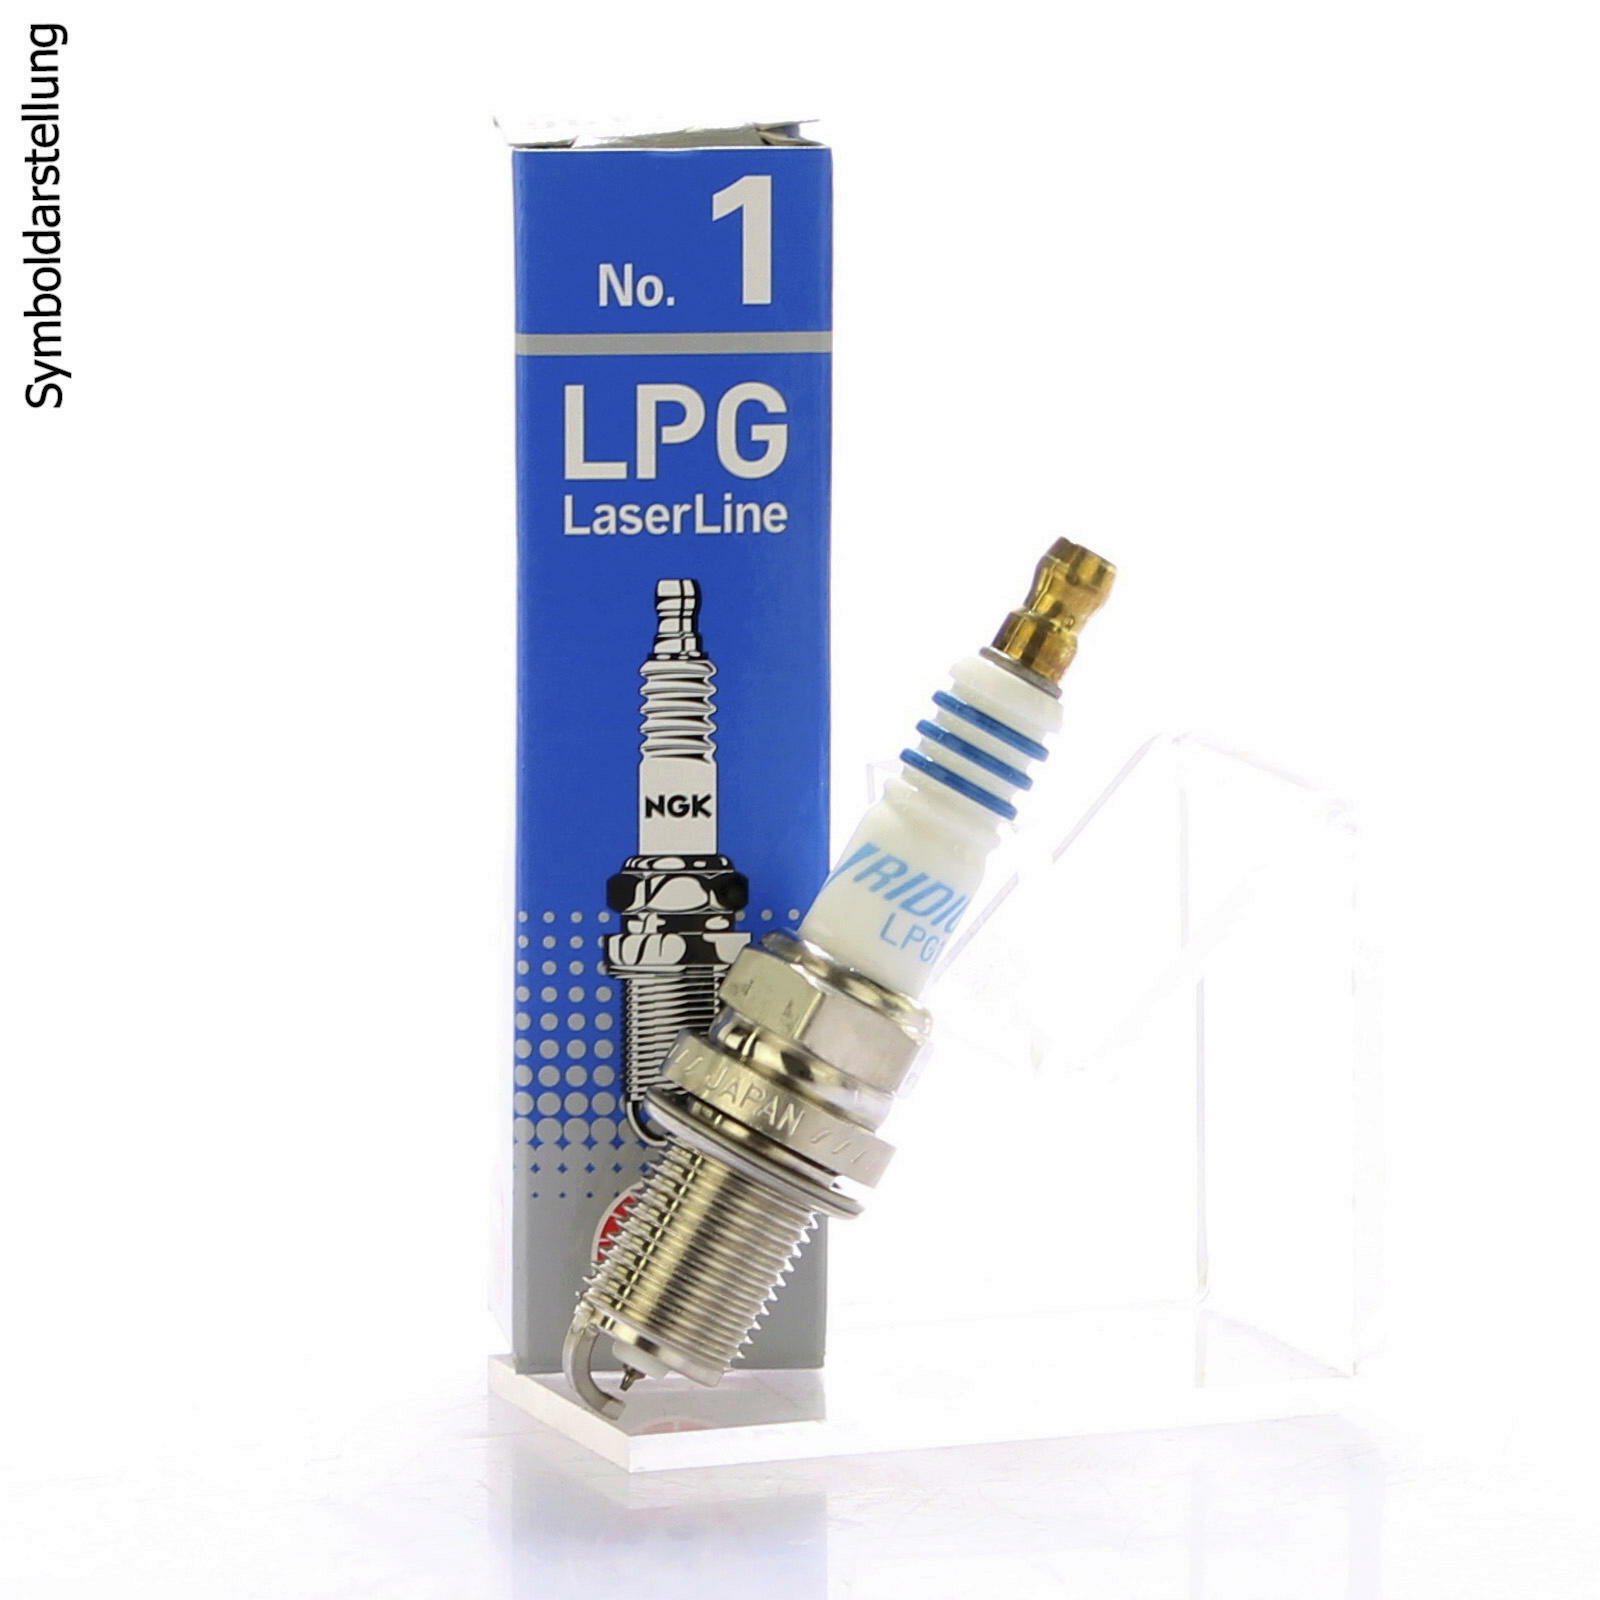 NGK Zündkerze LPG Laser Line